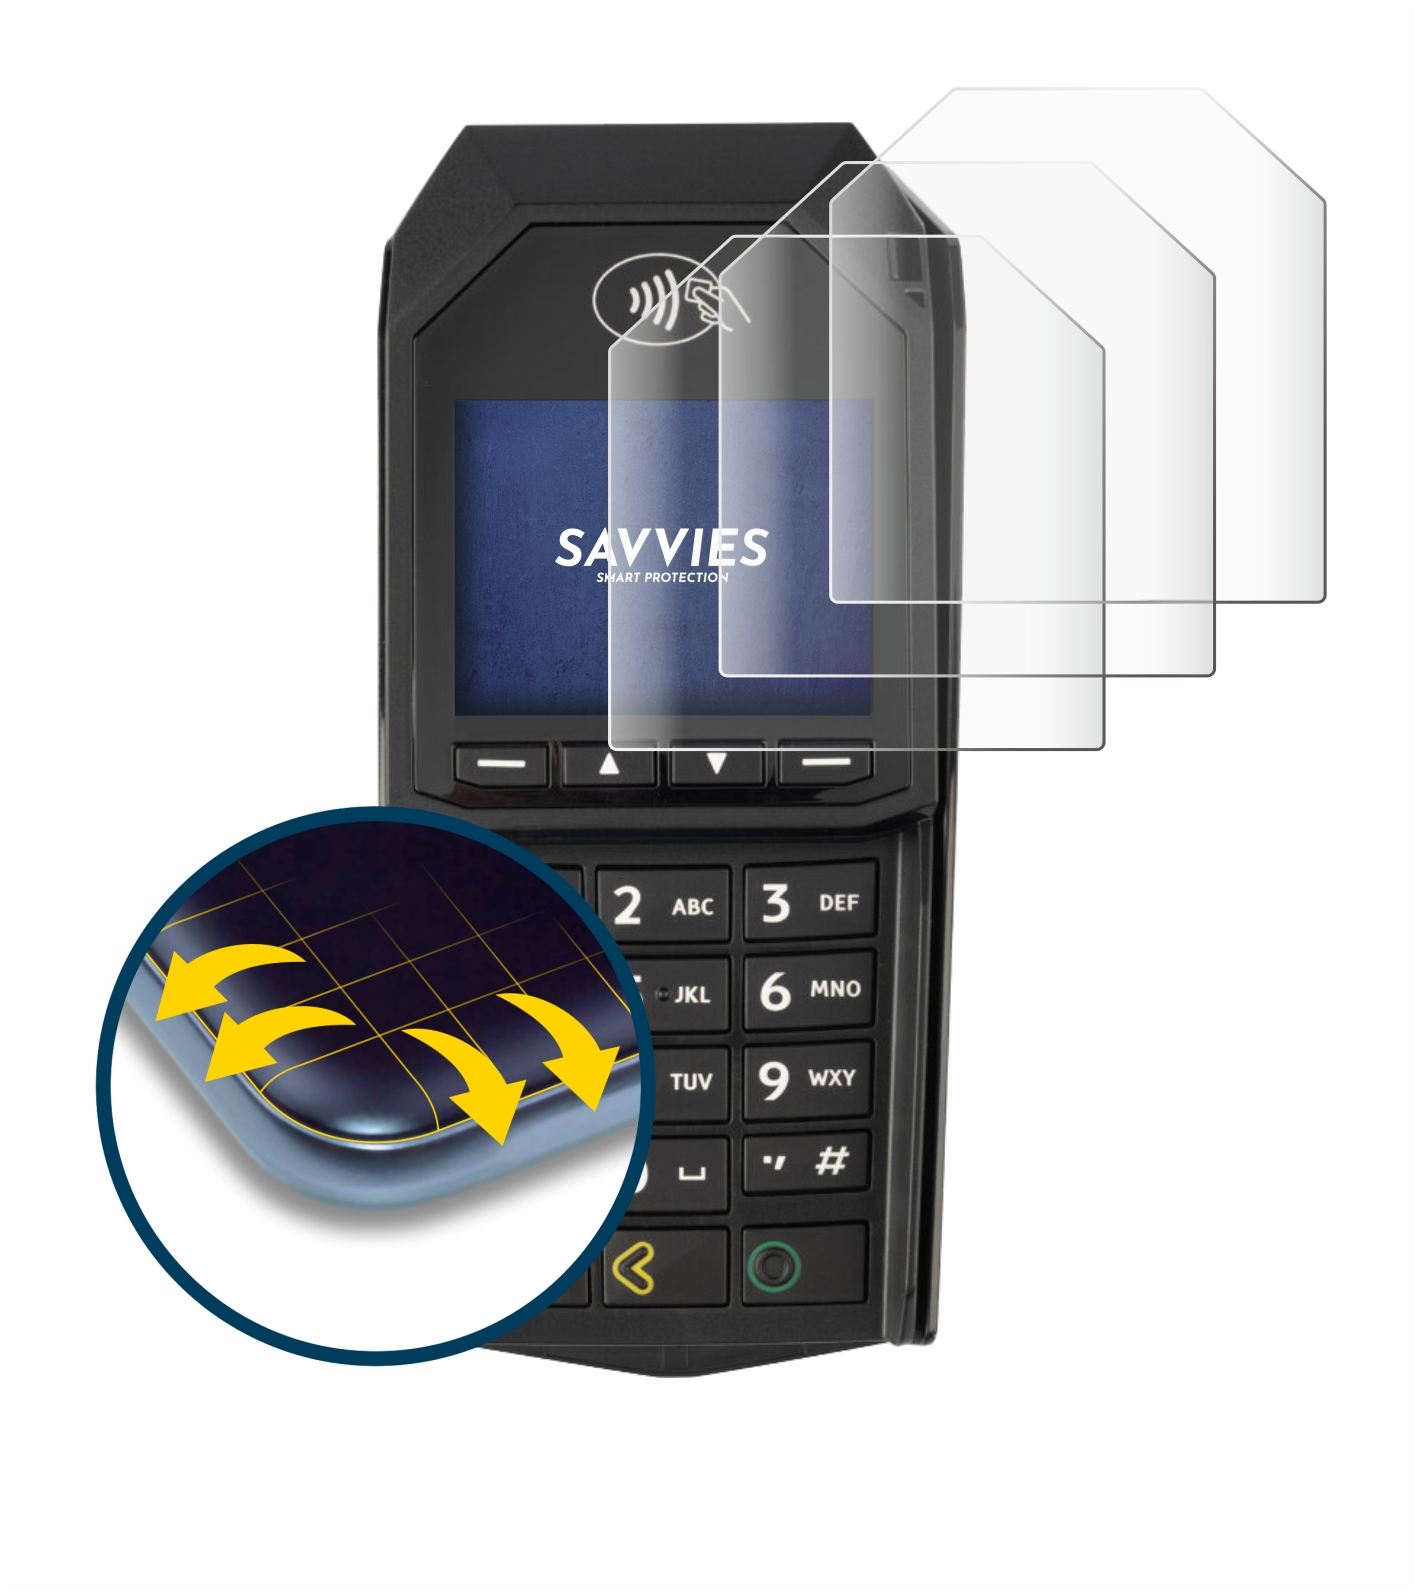 SAVVIES 4x Flex Curved ingenico Full-Cover 3D (non-touch)) Schutzfolie(für Lane/3000